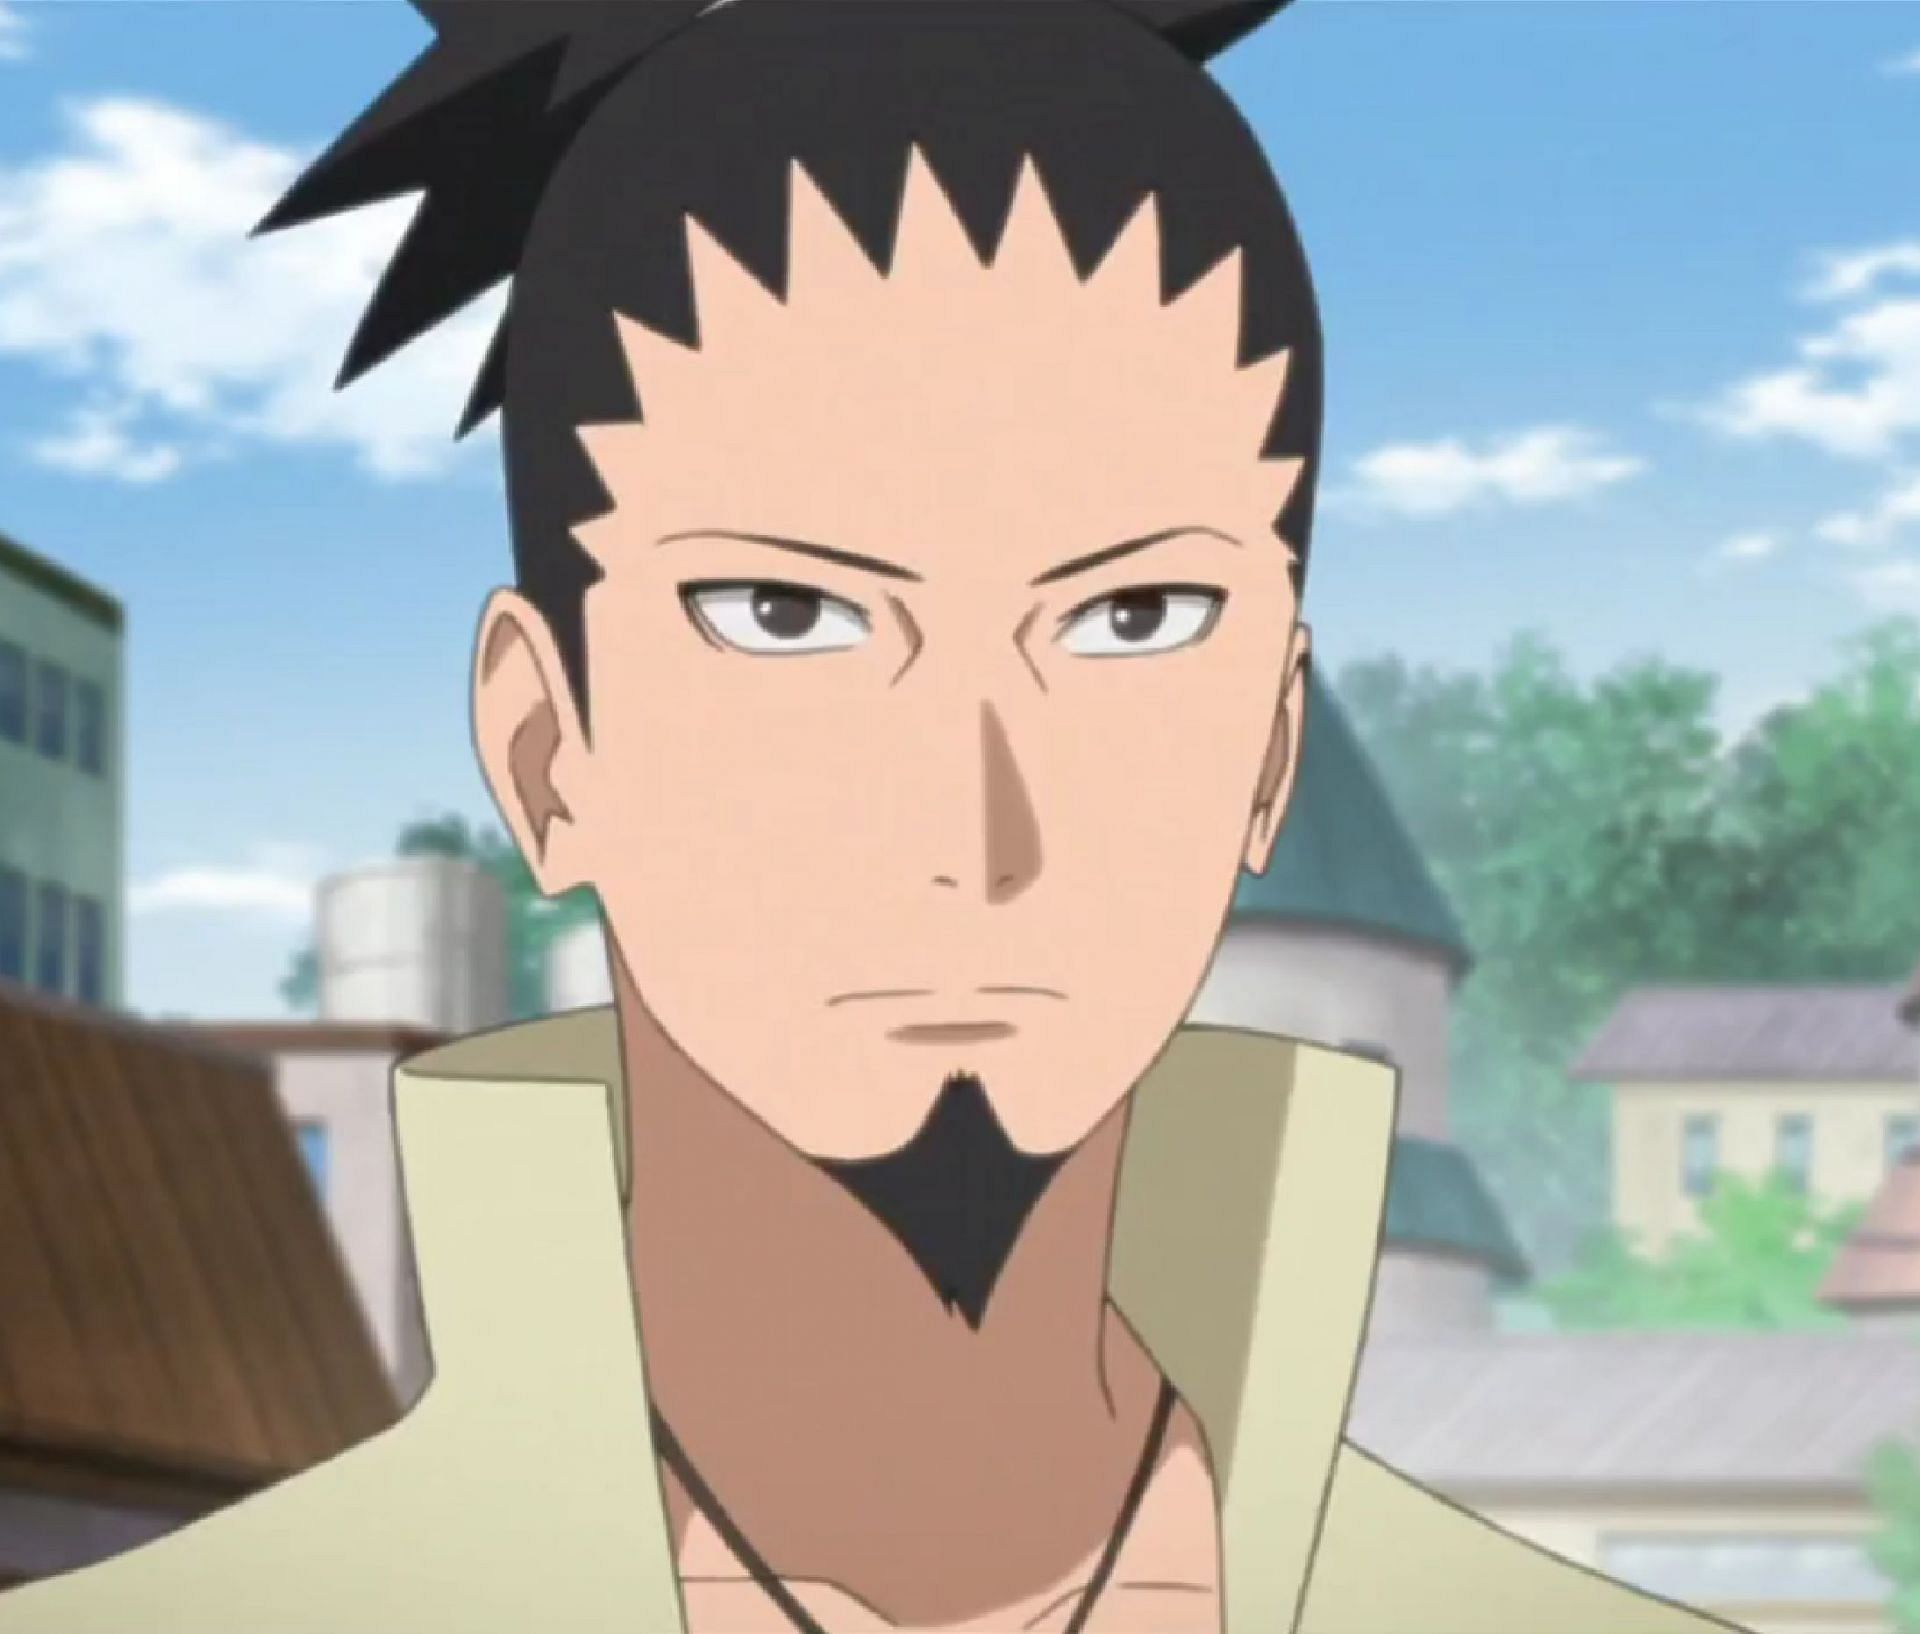 Adult Shikamaru as Naruto&#039;s advisor (Image via Masashi Kishimoto/Studio Pierrot)